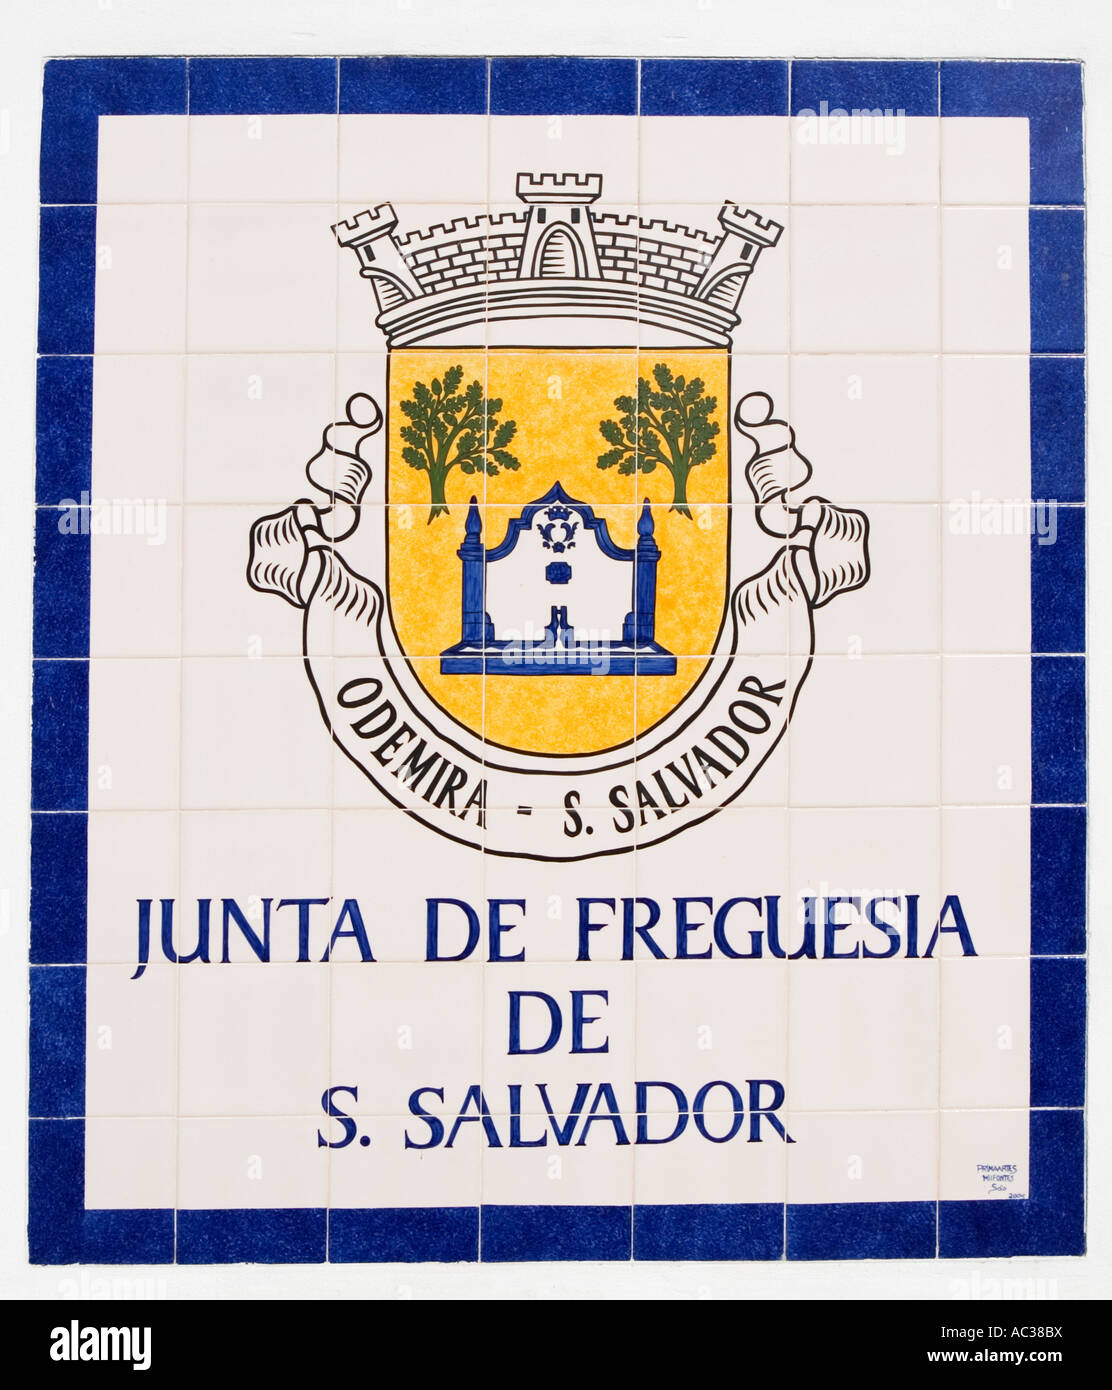 Junta de Freguesia de S Salvador Banque D'Images